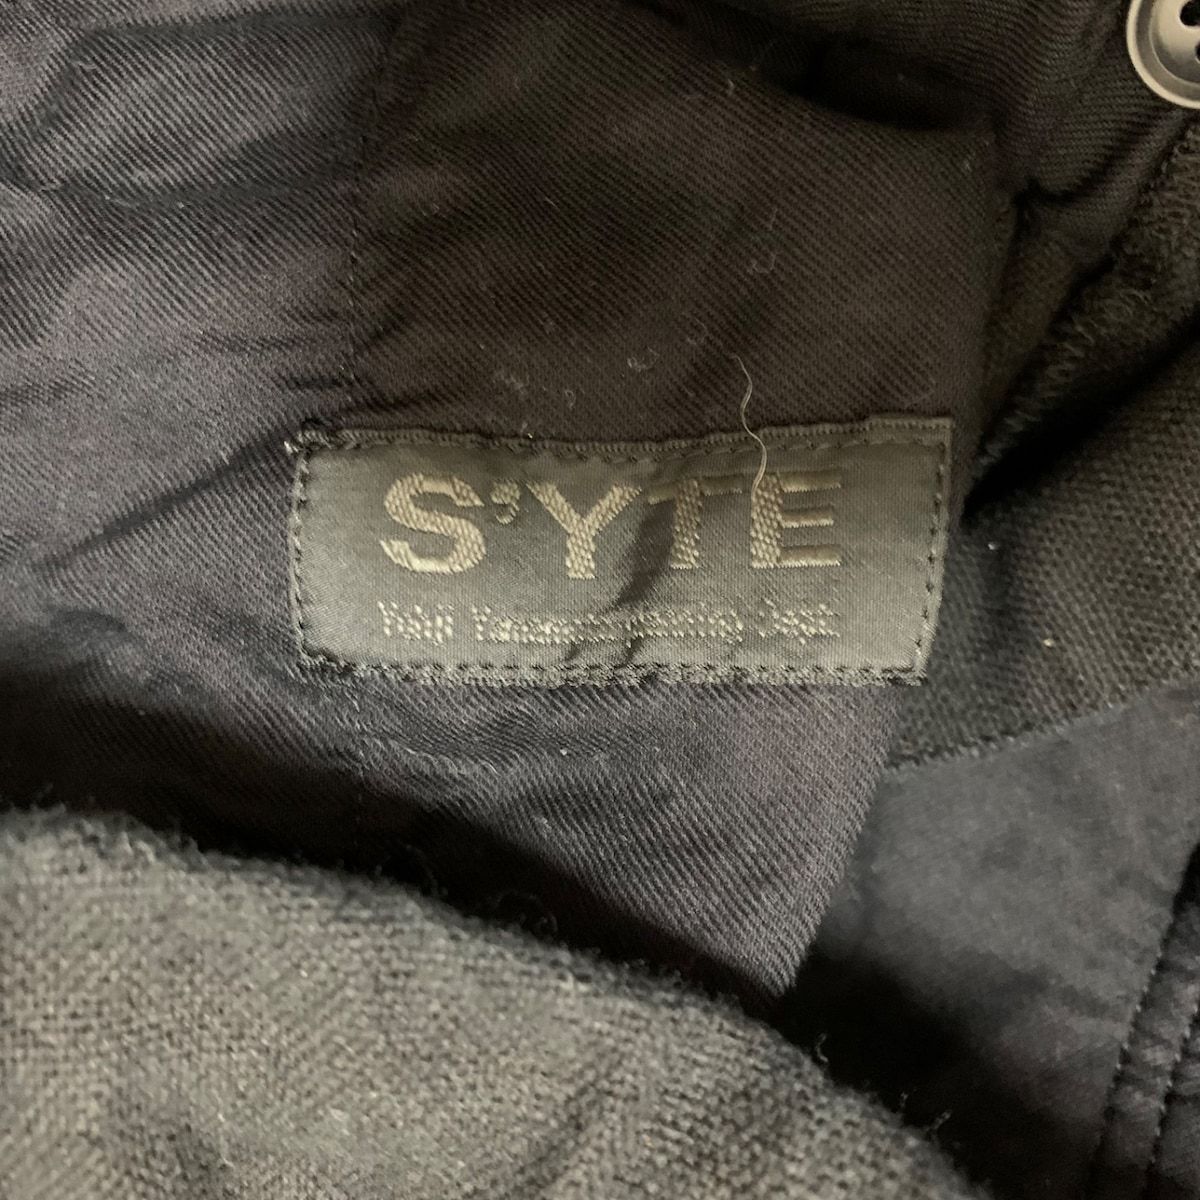 s'yte(サイト) パンツ サイズ3 L メンズ - 黒 クロップド(半端丈 ...